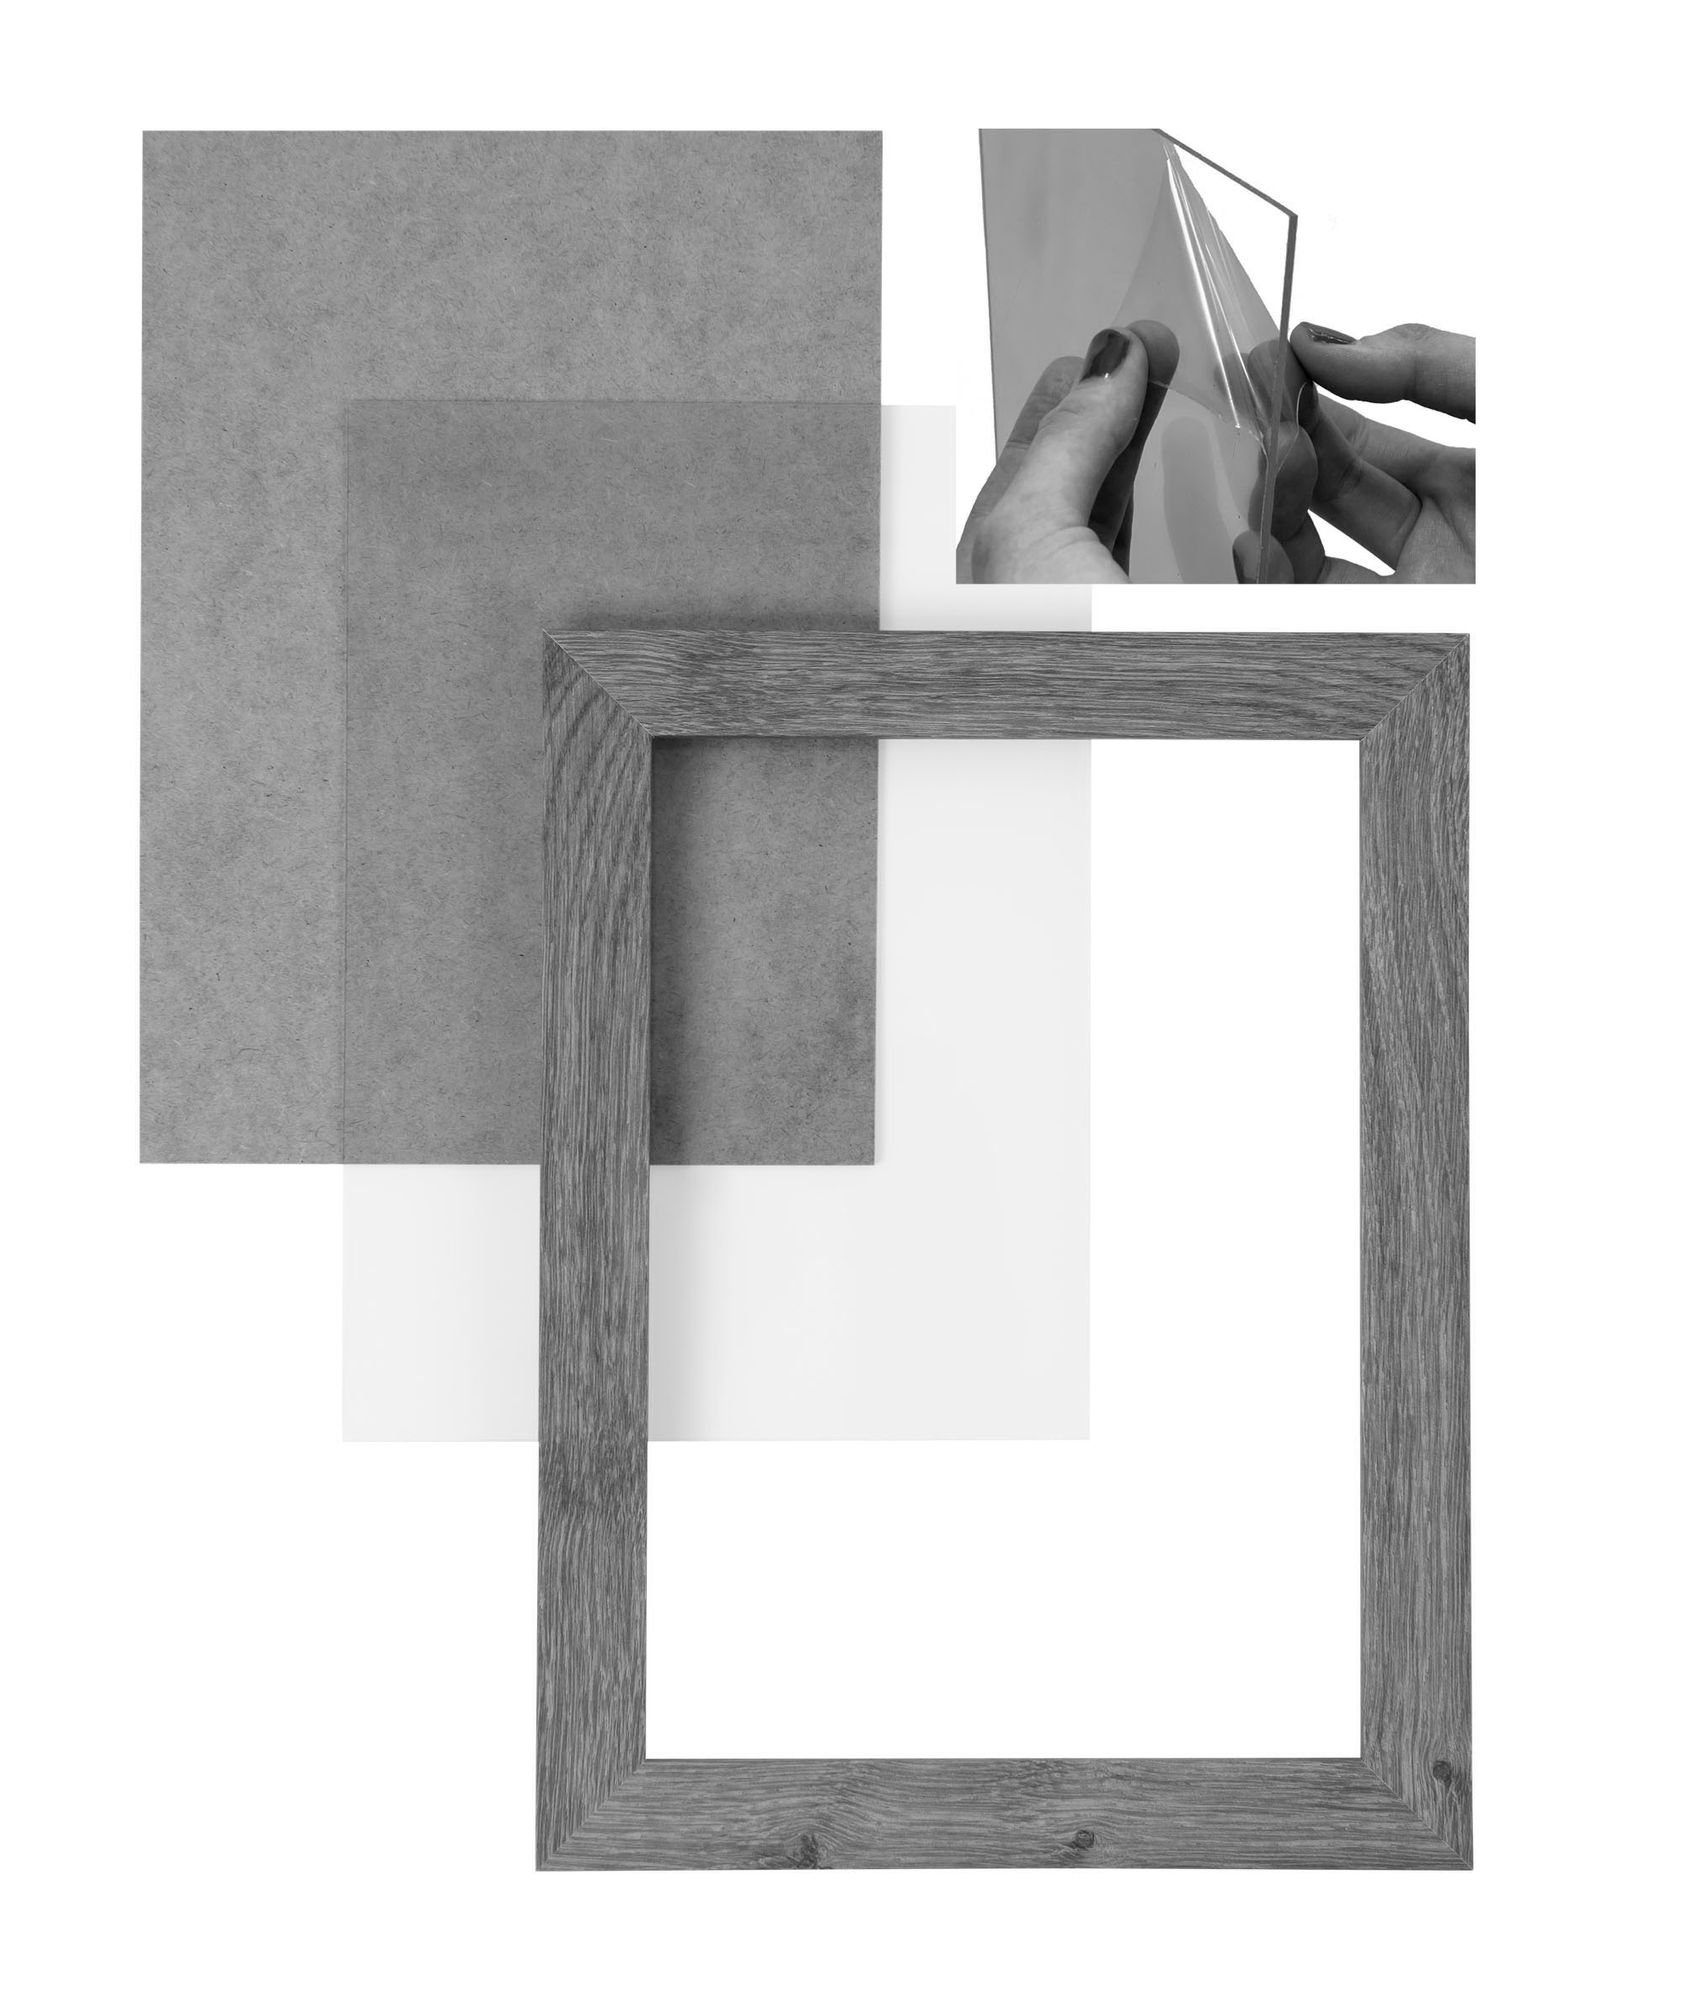 Maß Moderner in Clamaro nach FSC® Holz 'Collage' Acrylglas, Rahmen sonama handgefertigt eiche CLAMARO Bilderrahmen MDF inkl. Aufhänger Rückwand eckiger Bilderrahmen und 30x100